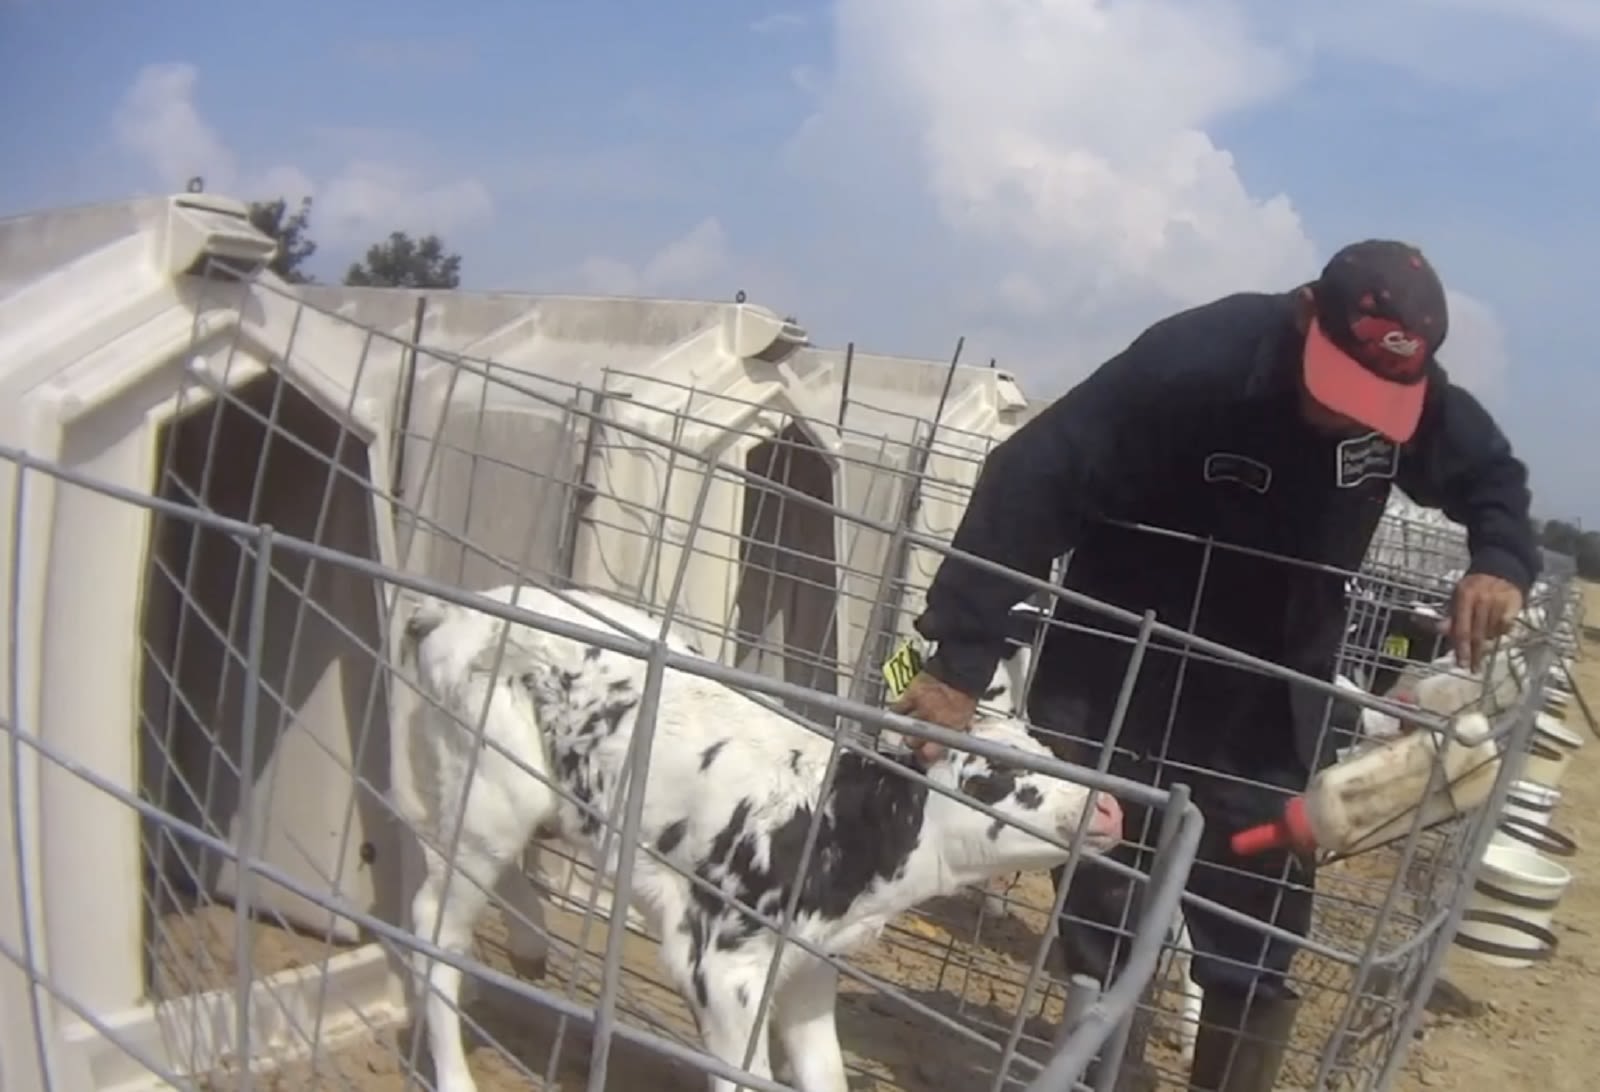 Disturbing video taken of calf abuse at Fair Oaks Farms | CNN Business